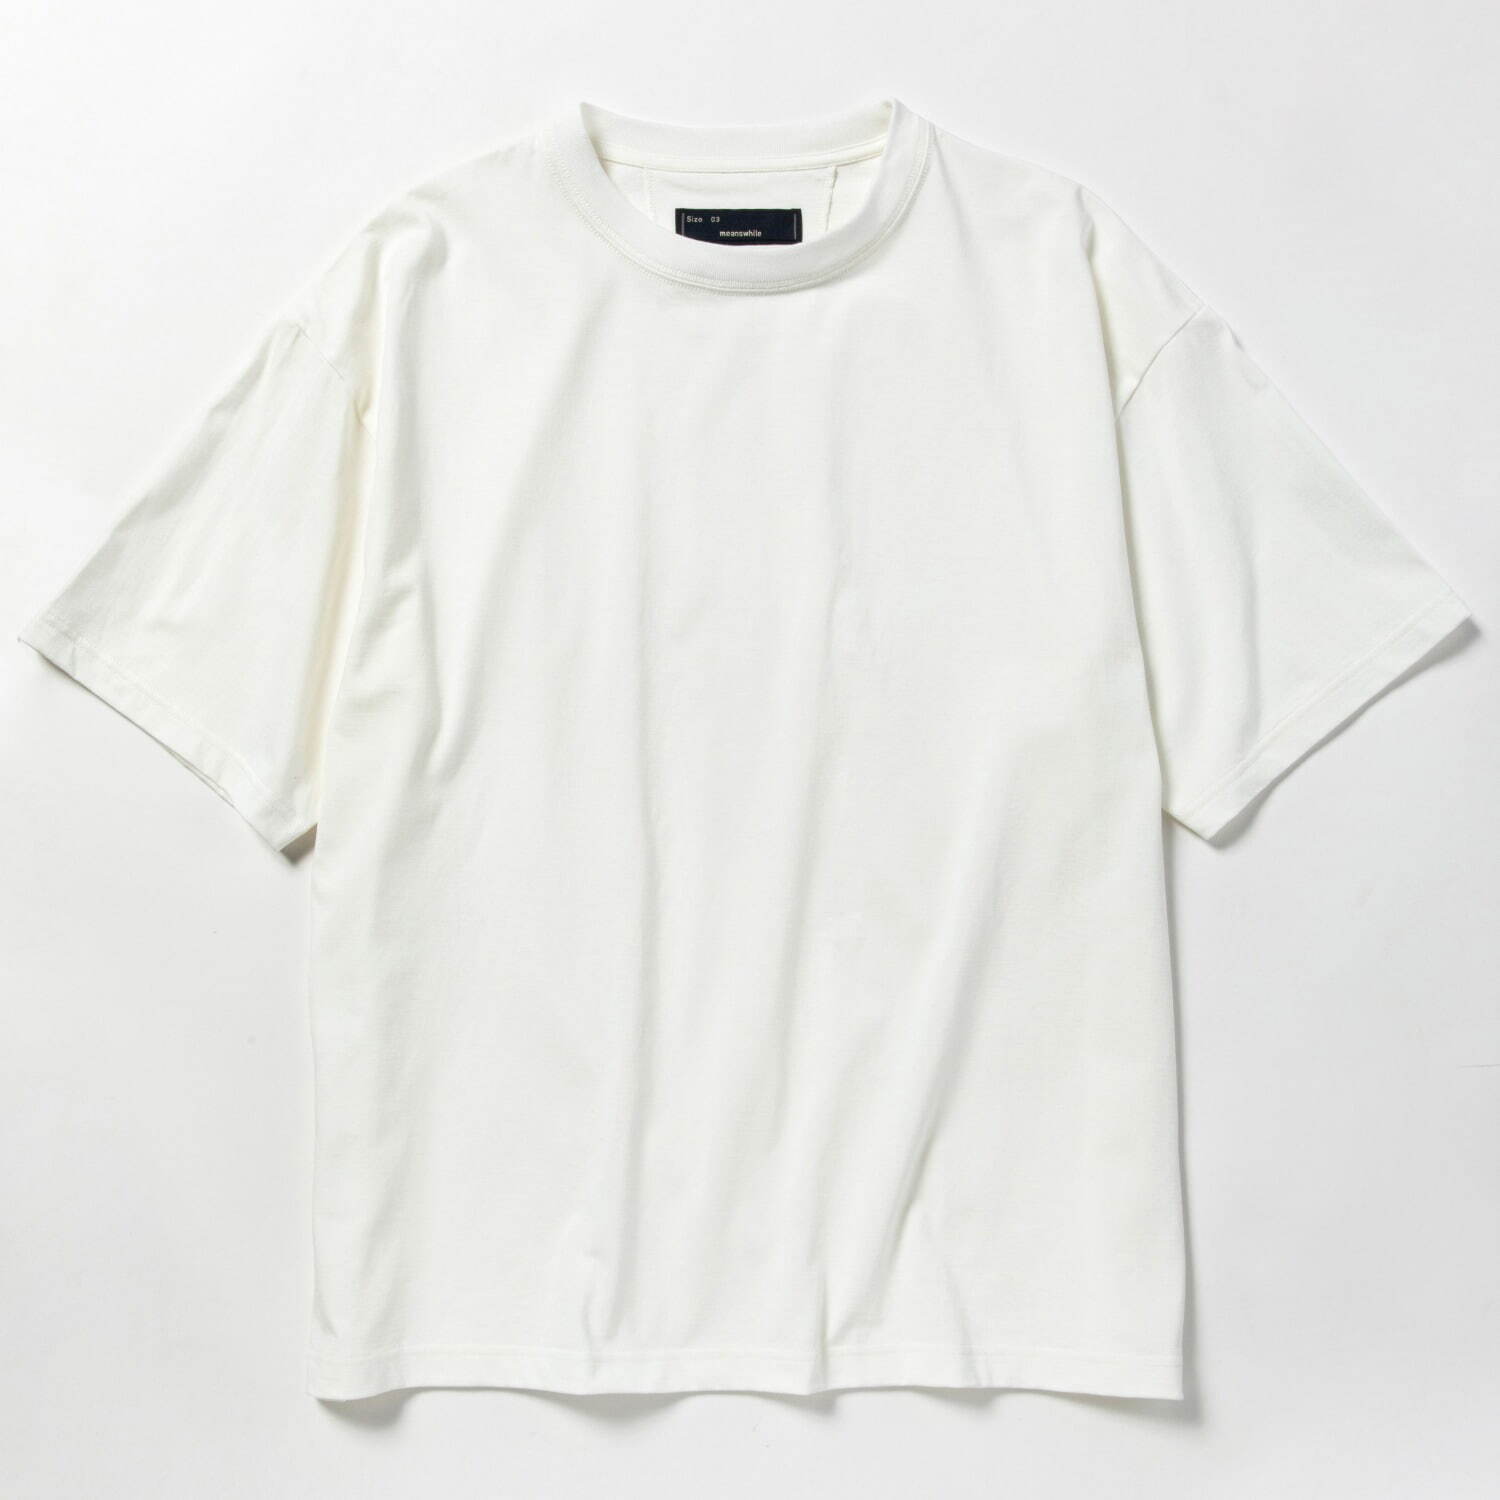 メンズのおすすめ 白tシャツ 無地 プリント ワンポイント コーデで活躍するtシャツを種類別に紹介 ファッションプレス